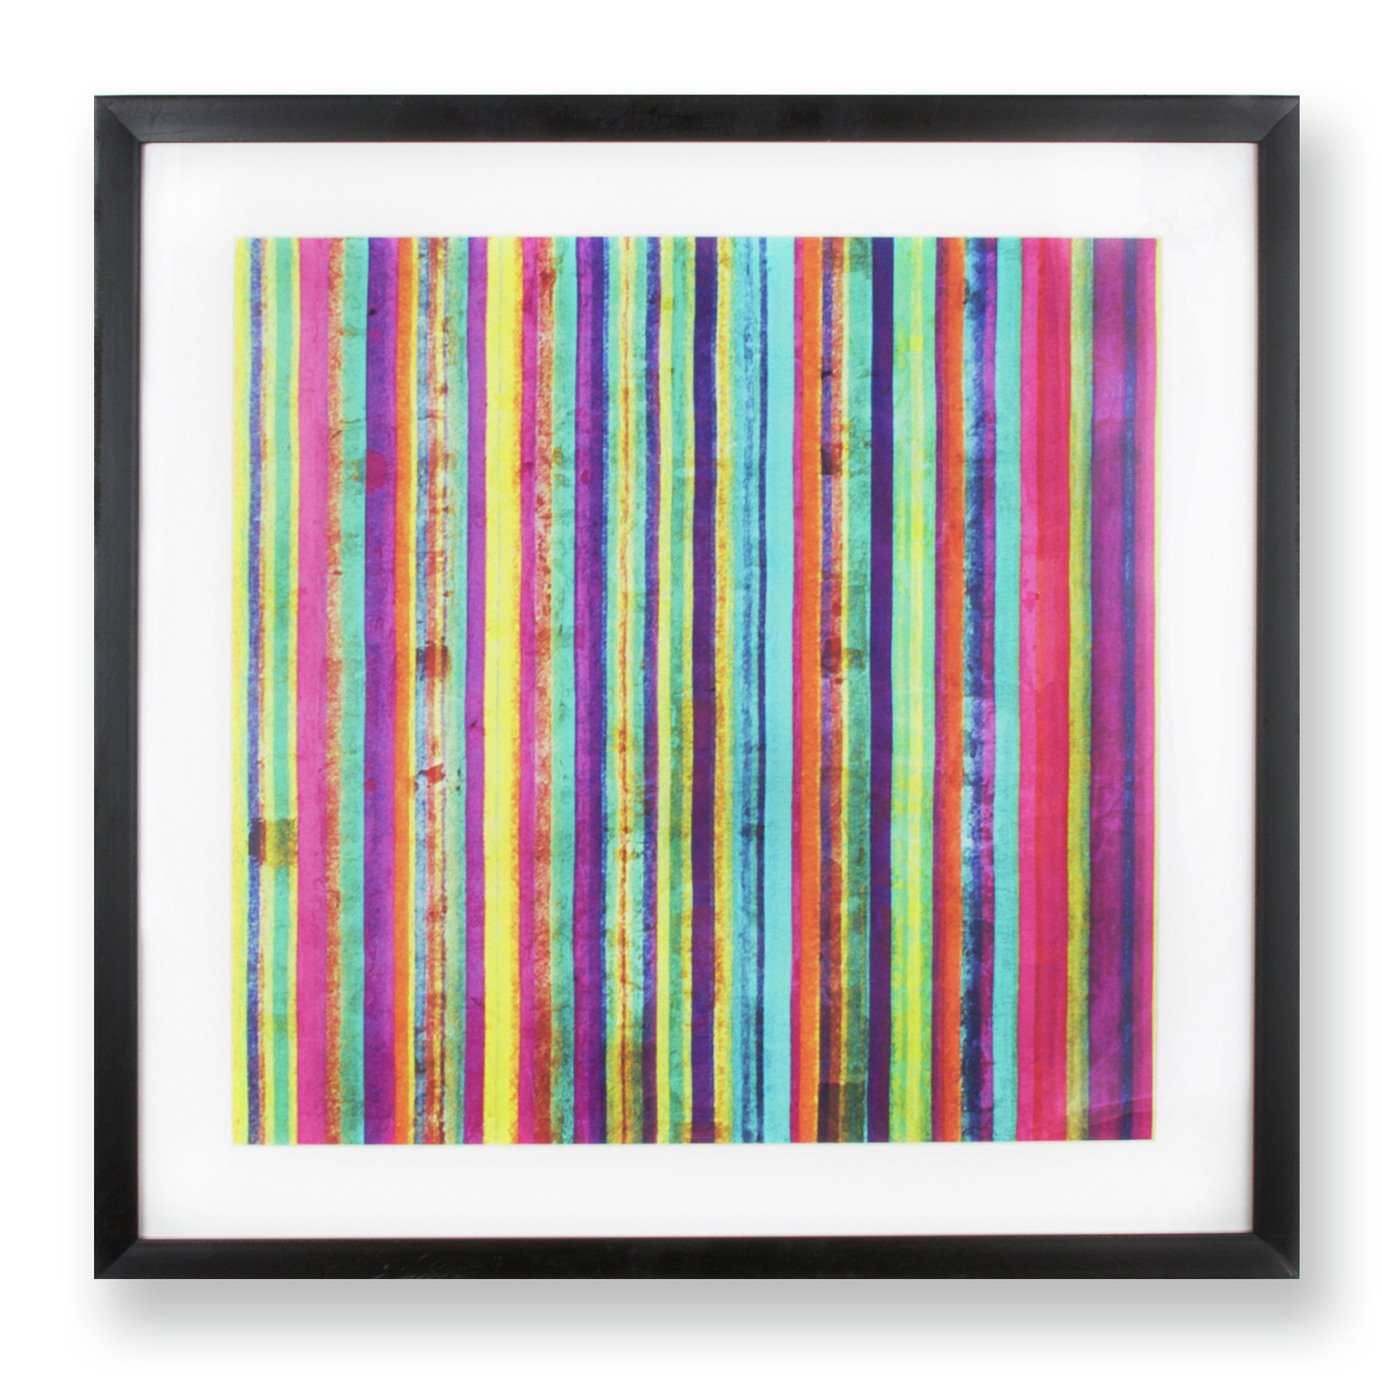 Art for the Home Neon Stripe Framed Wall Art